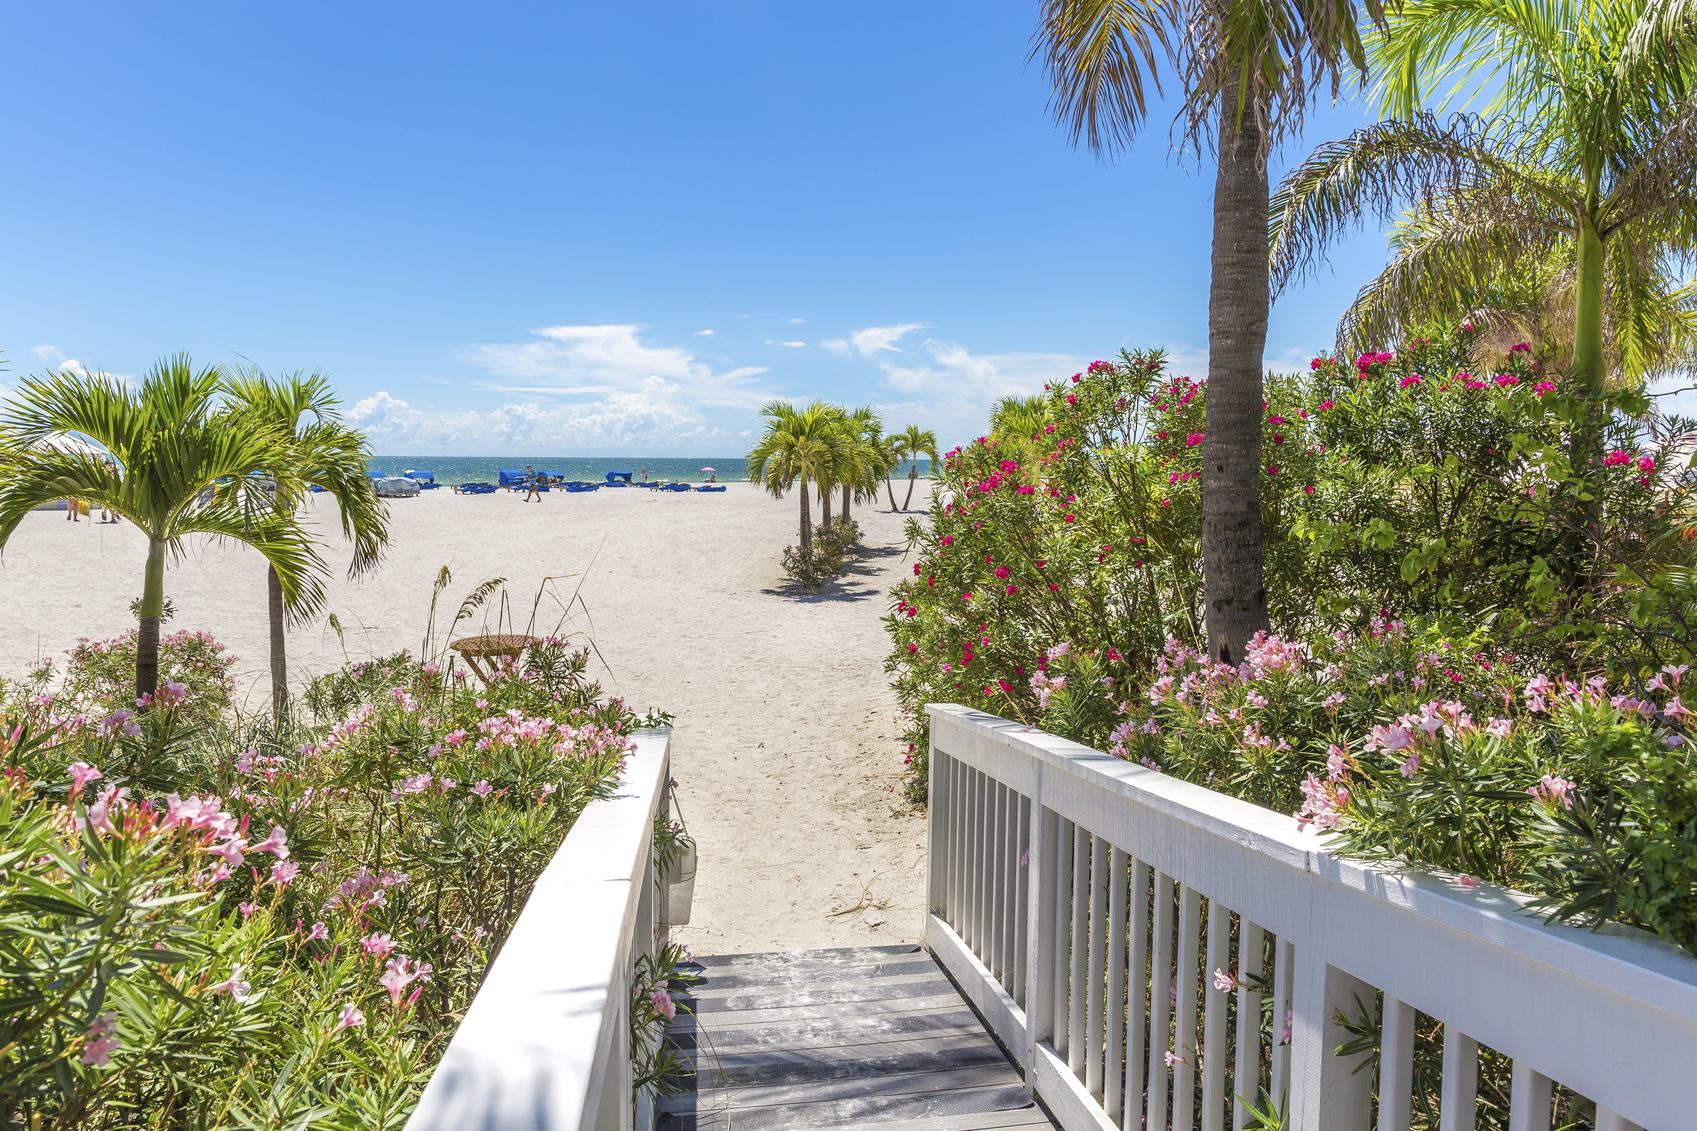 Boardwalk on beach in St. Pete, Florida